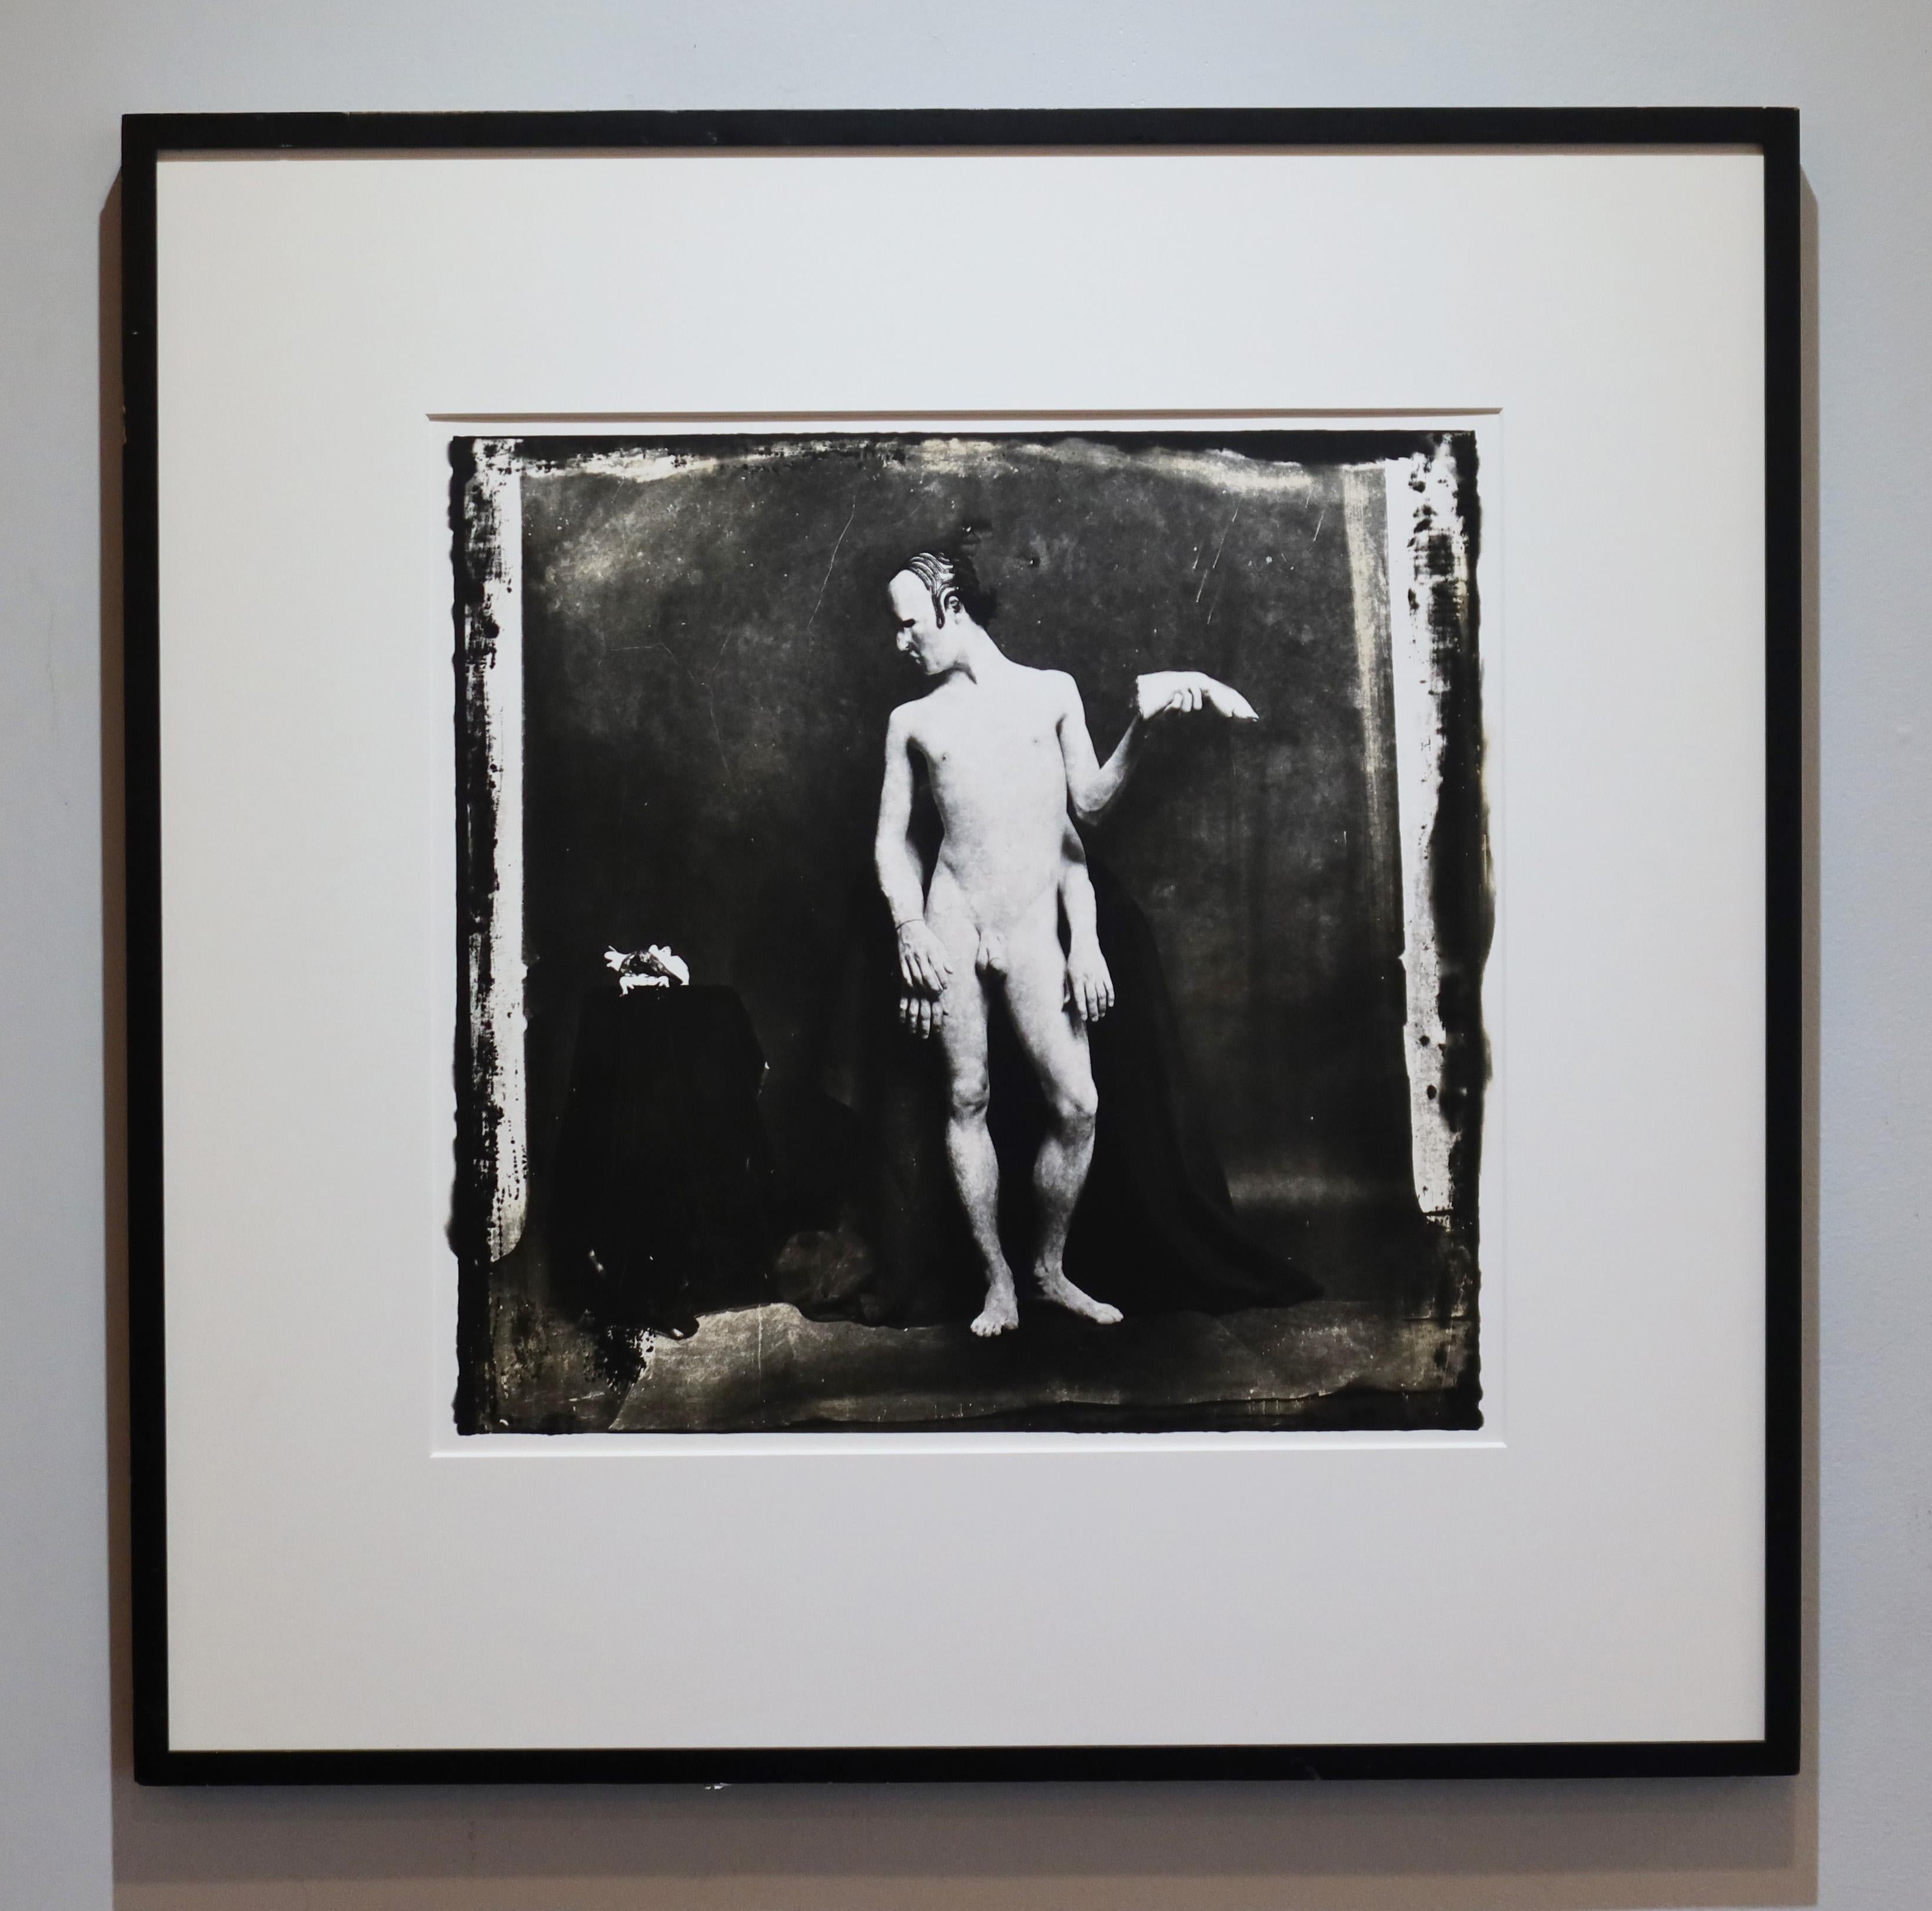 Zum Verkauf steht ein Originalfoto von Joel-Peter Witkin.  Es ist ein Originalfoto, Ausgabe 1 von 15

Guggenheim Museum Provenienz und auch verkauft durch Sotheby's 2012

Der Junge mit den vier Armen, San Francisco (Il Ragazzo Con Quattro Bracci)